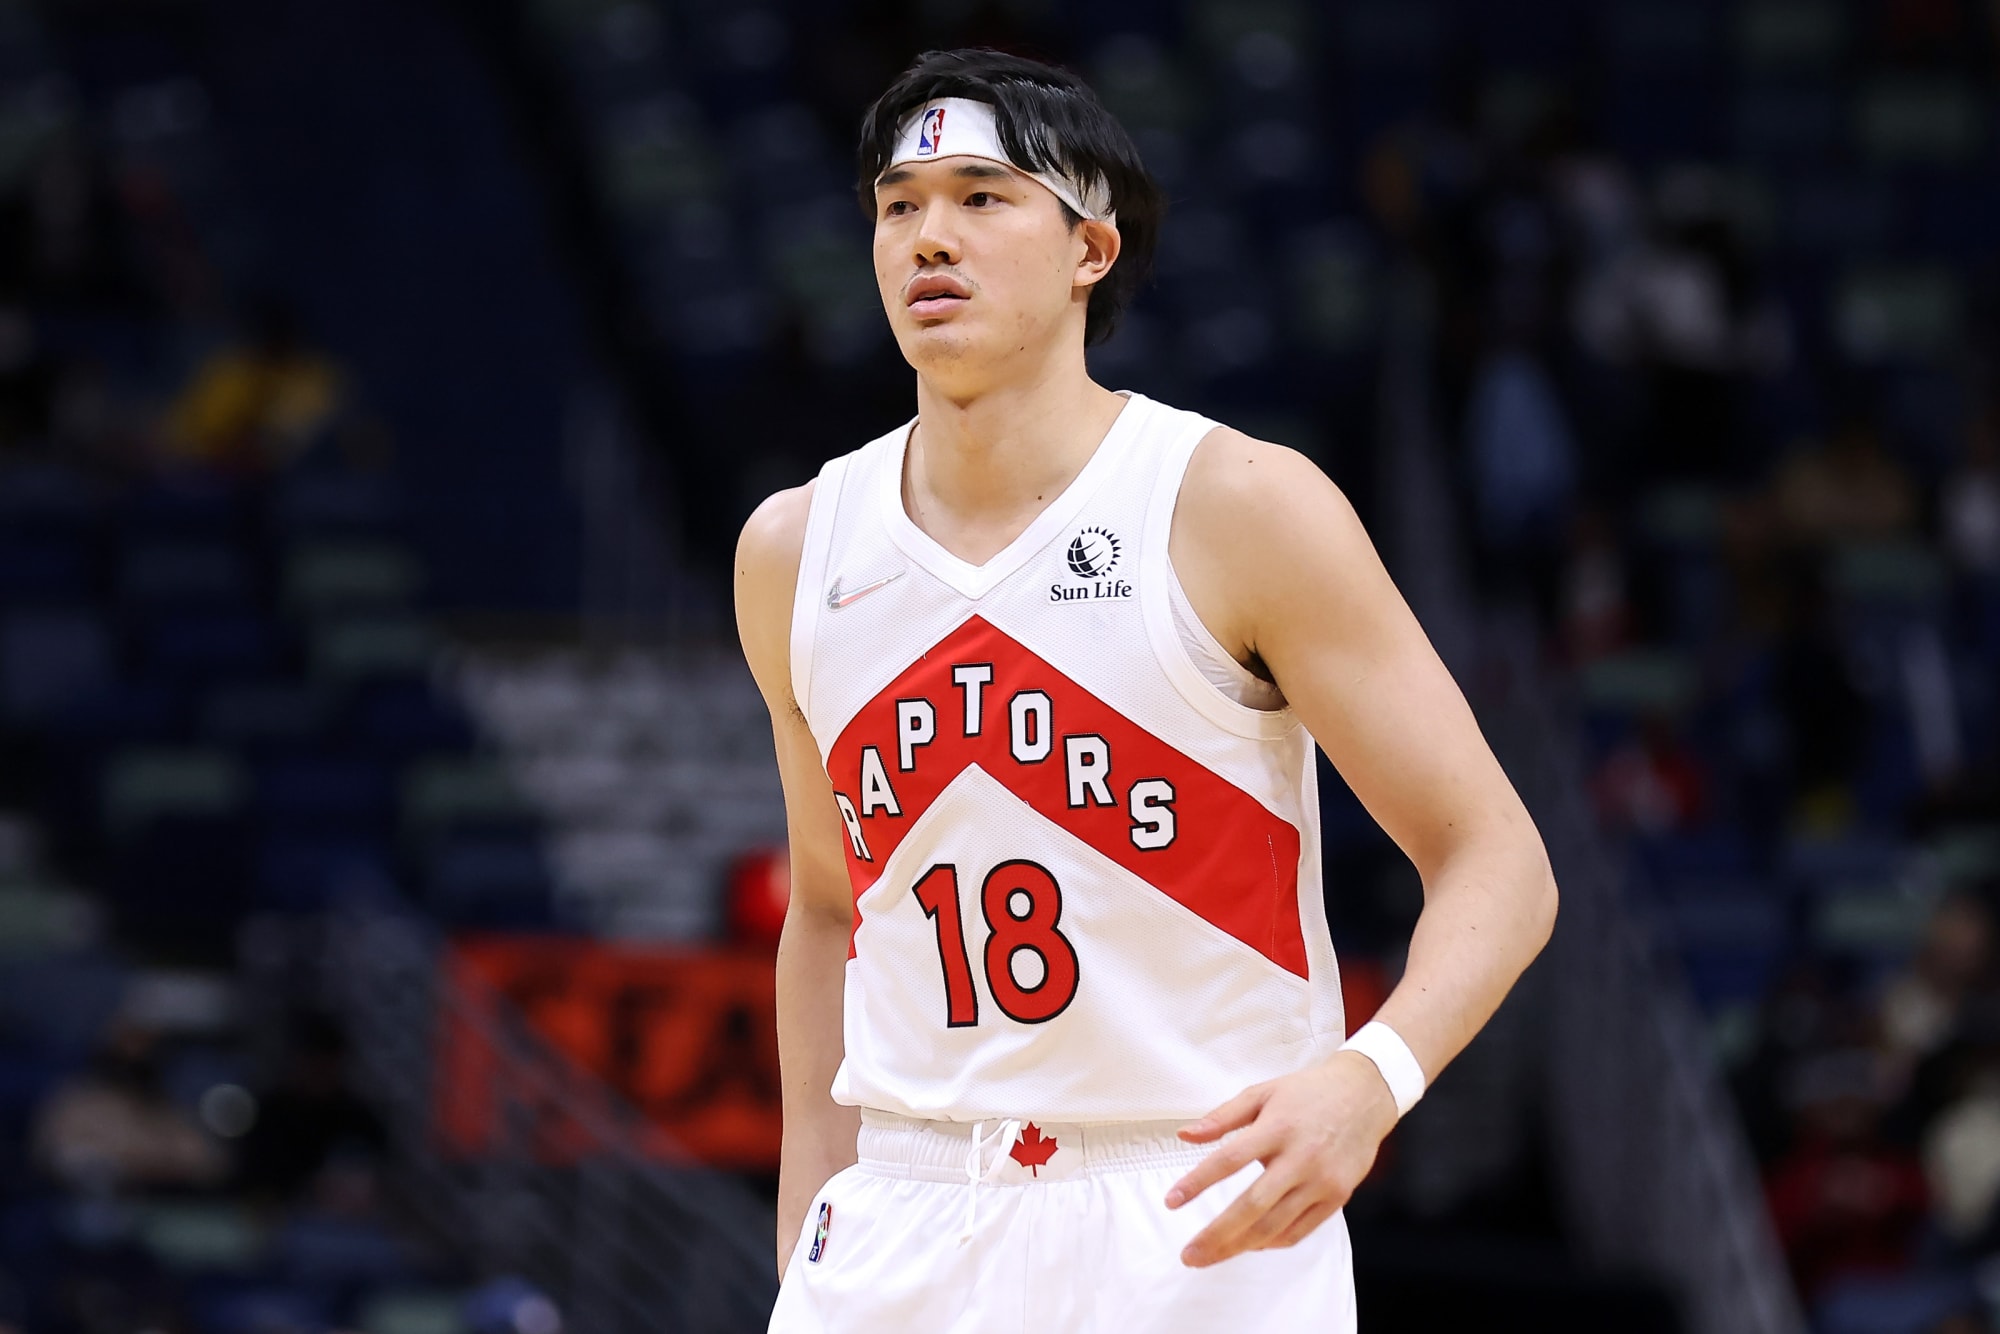 Fan-favorite Yuta Watanabe leaves Raptors, signs with Nets